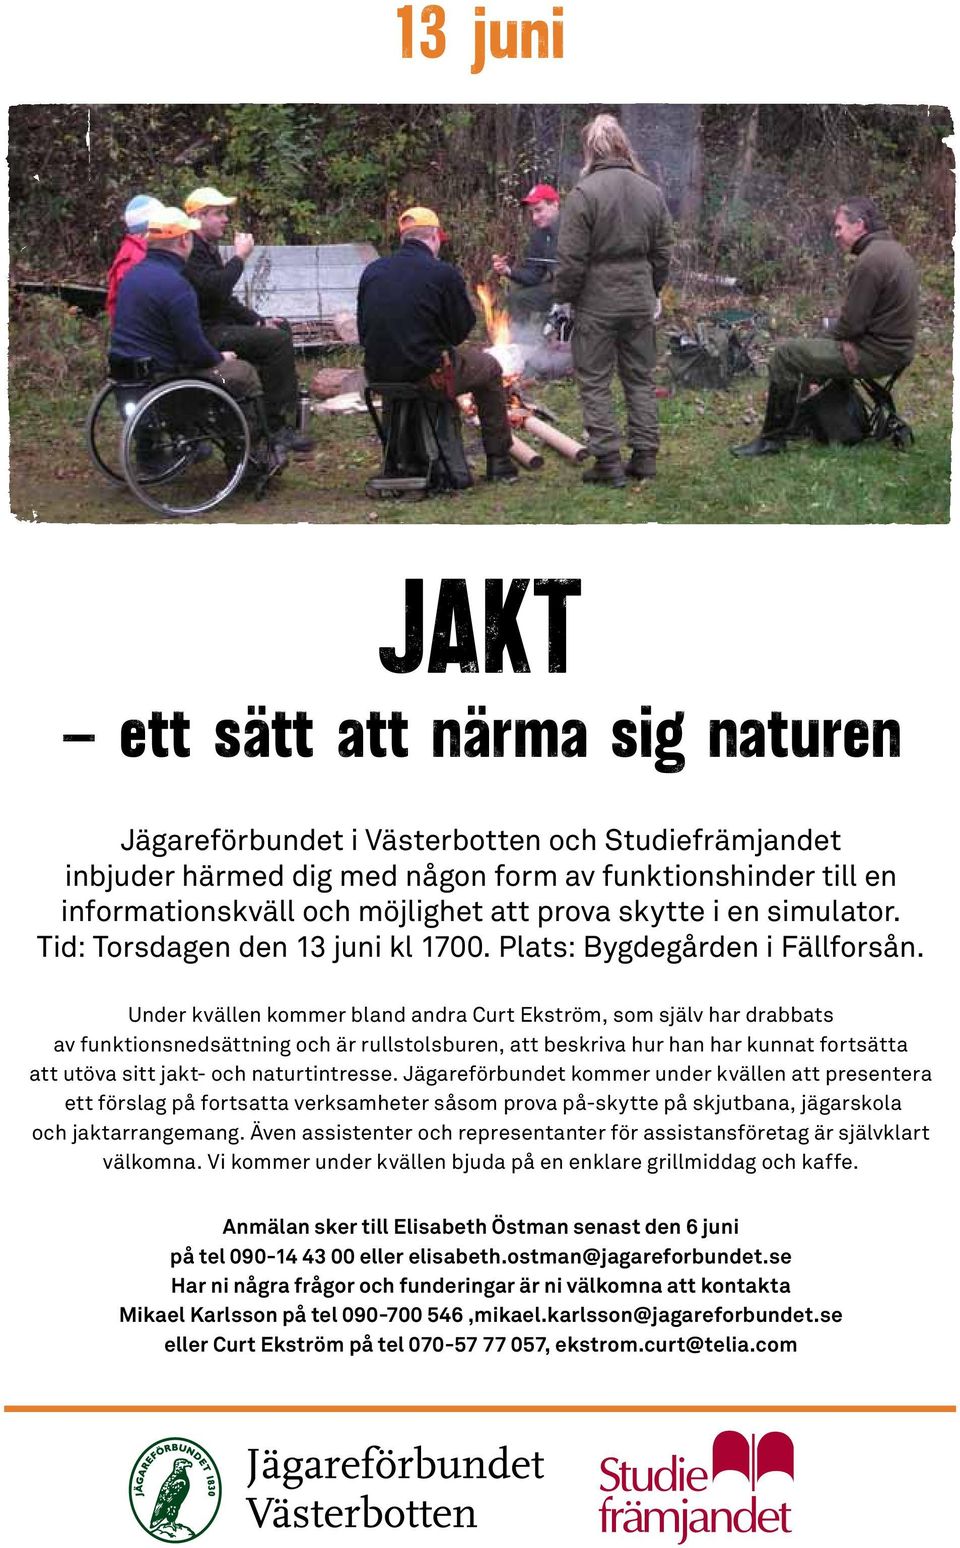 Under kvällen kommer bland andra Curt Ekström, som själv har drabbats av funktionsnedsättning och är rullstolsburen, att beskriva hur han har kunnat fortsätta att utöva sitt jakt- och naturtintresse.